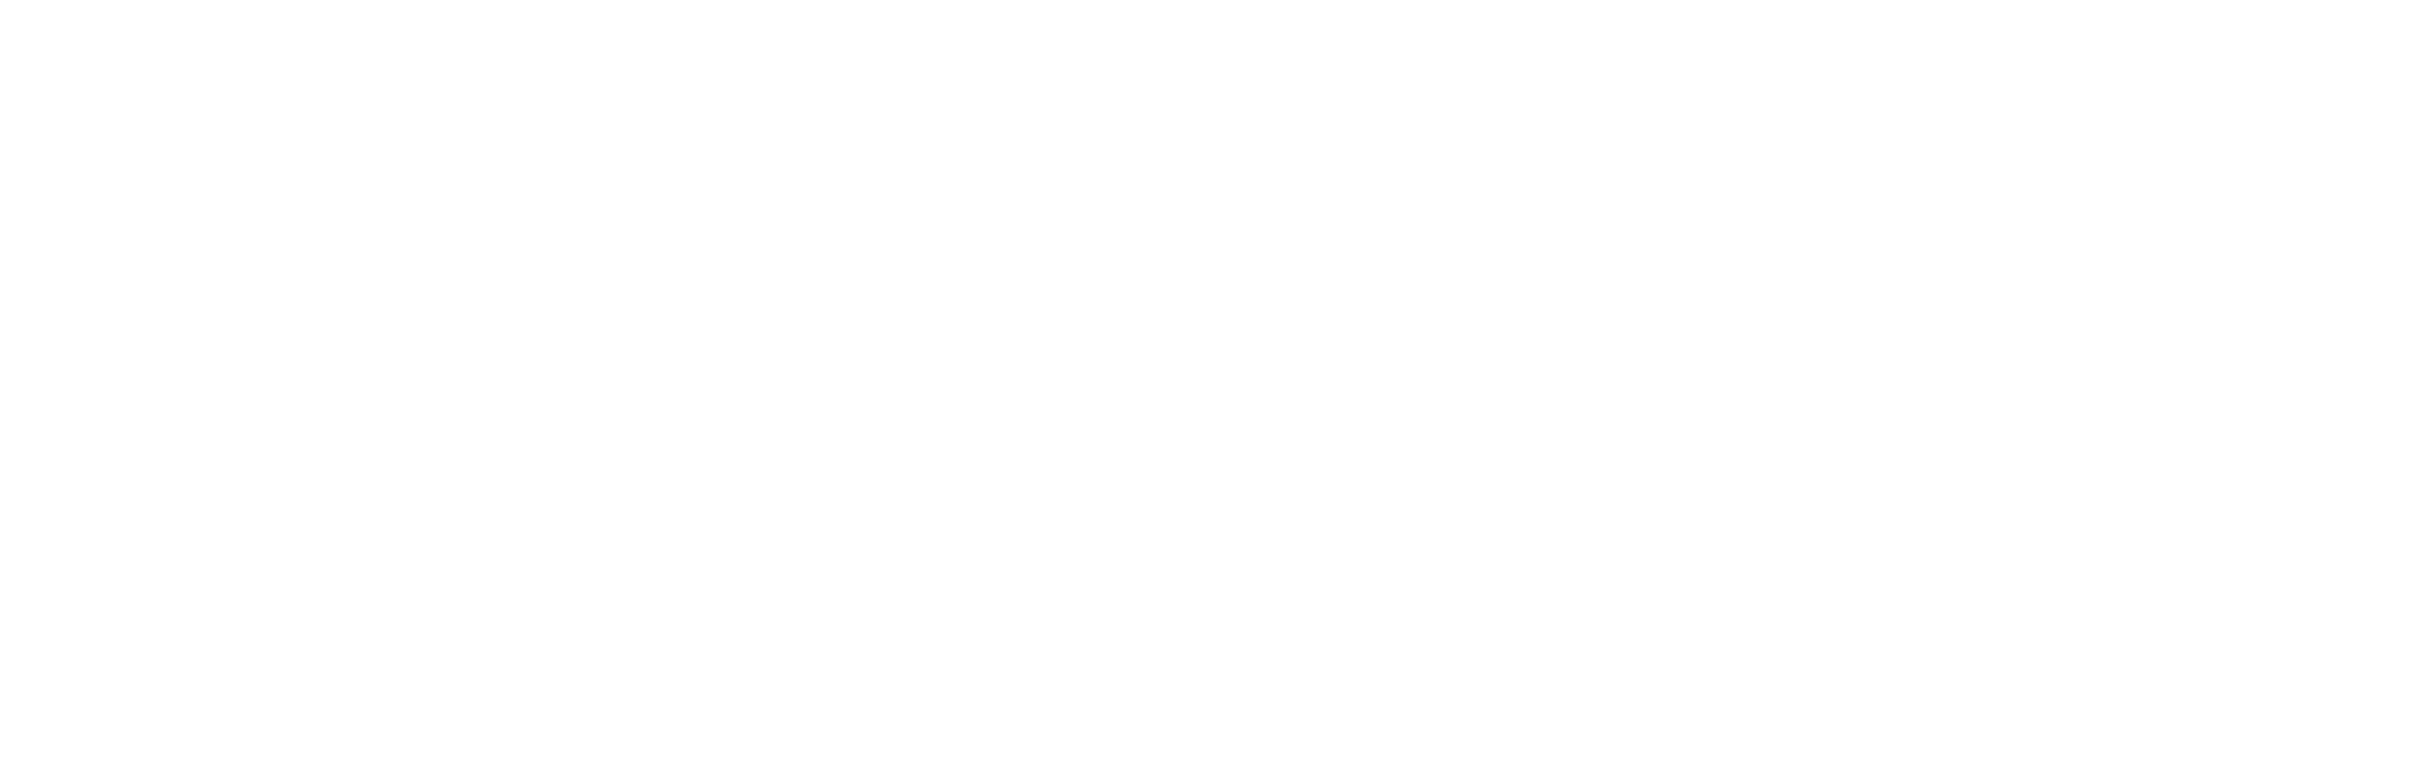 SSG Insight